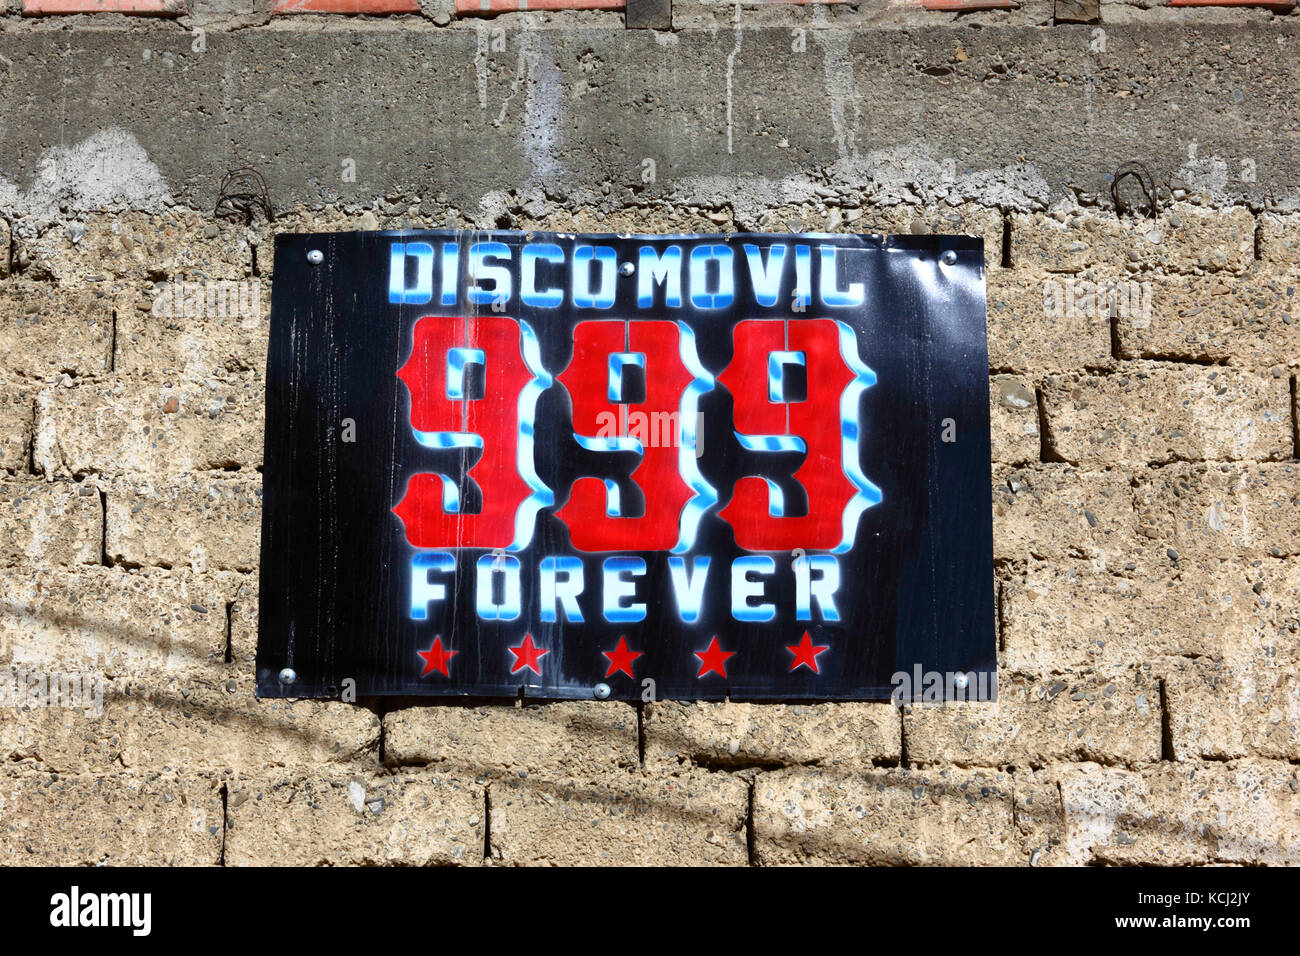 Discoteca mobile 999 per sempre segno su adobe / parete mudbrick, el alto, Bolivia Foto Stock